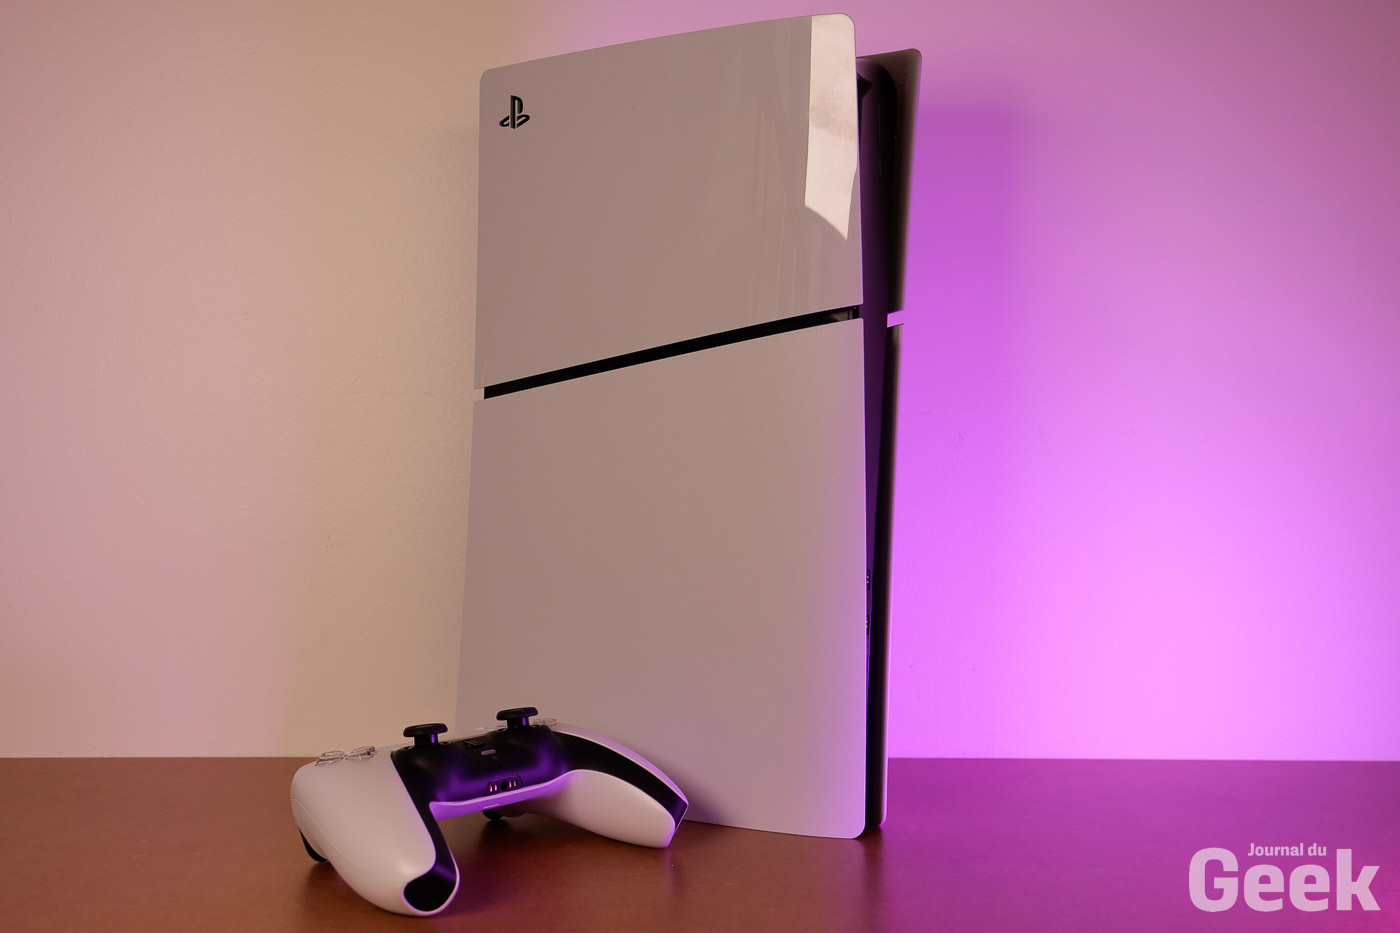 Façades pour console PlayStation 5  Façades officielles pour PS5 créées  par PlayStation (France)